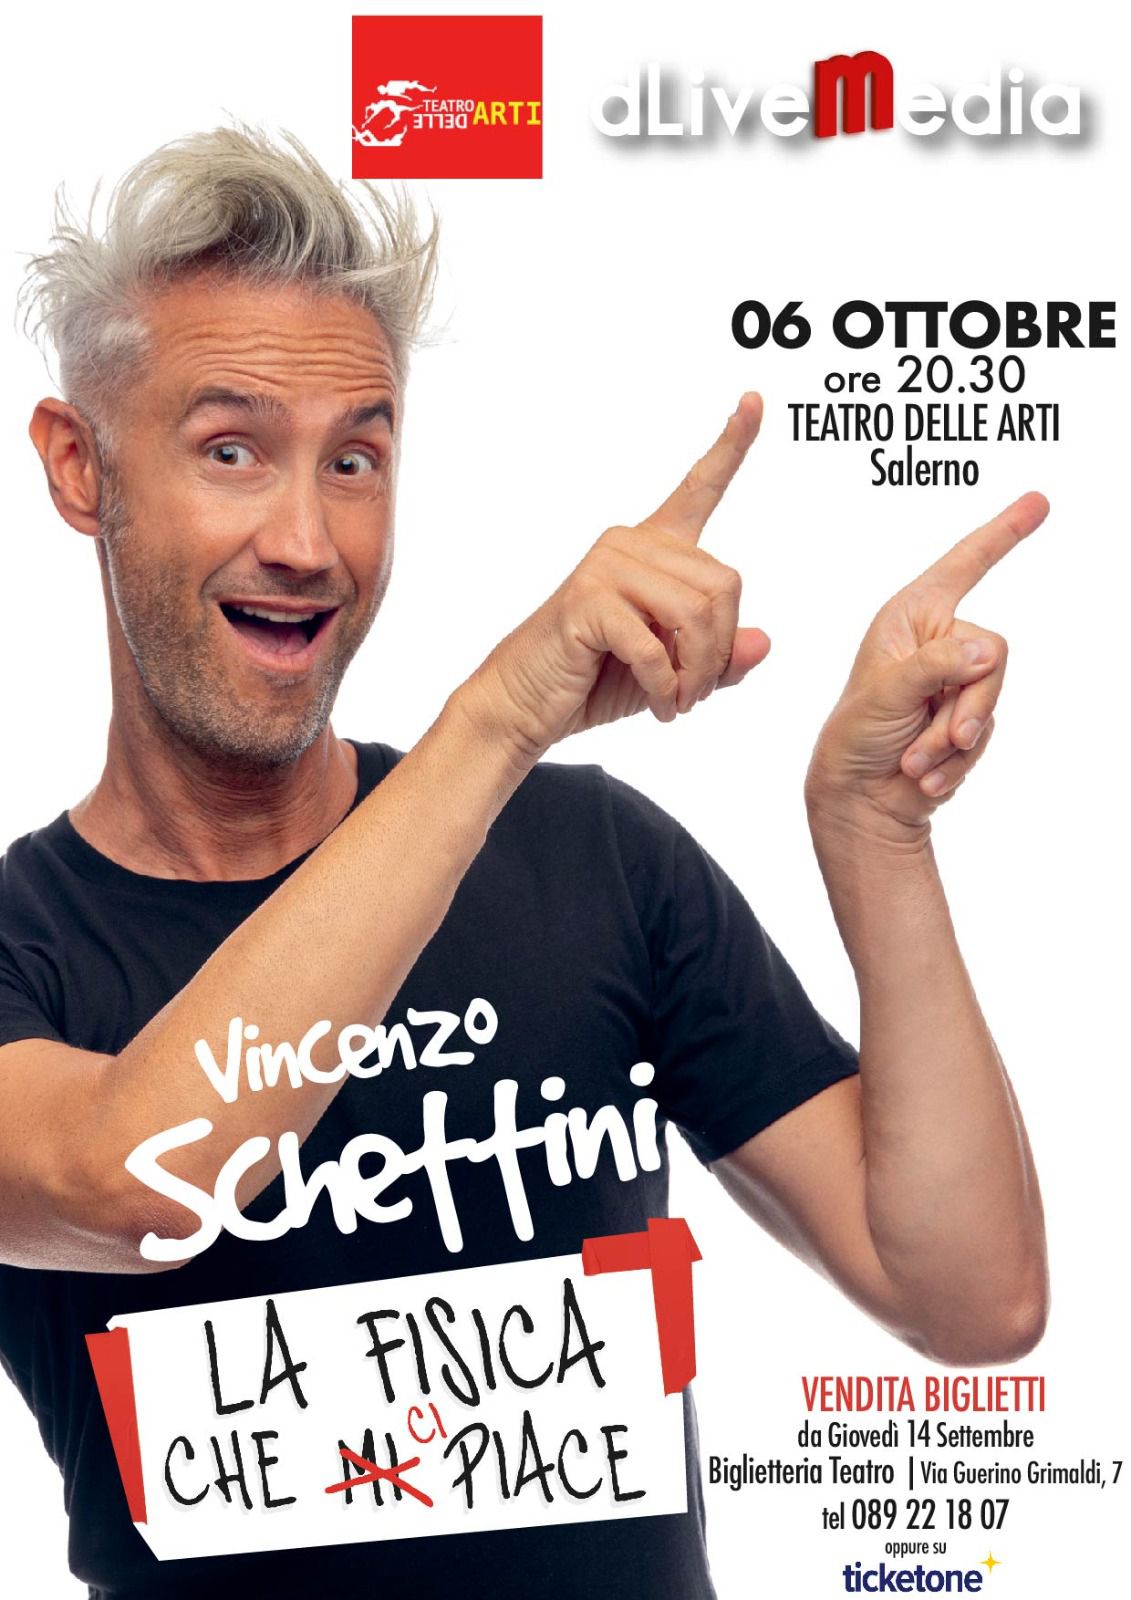 Salerno: a Teatro Delle Arti, Vittorio Schettini